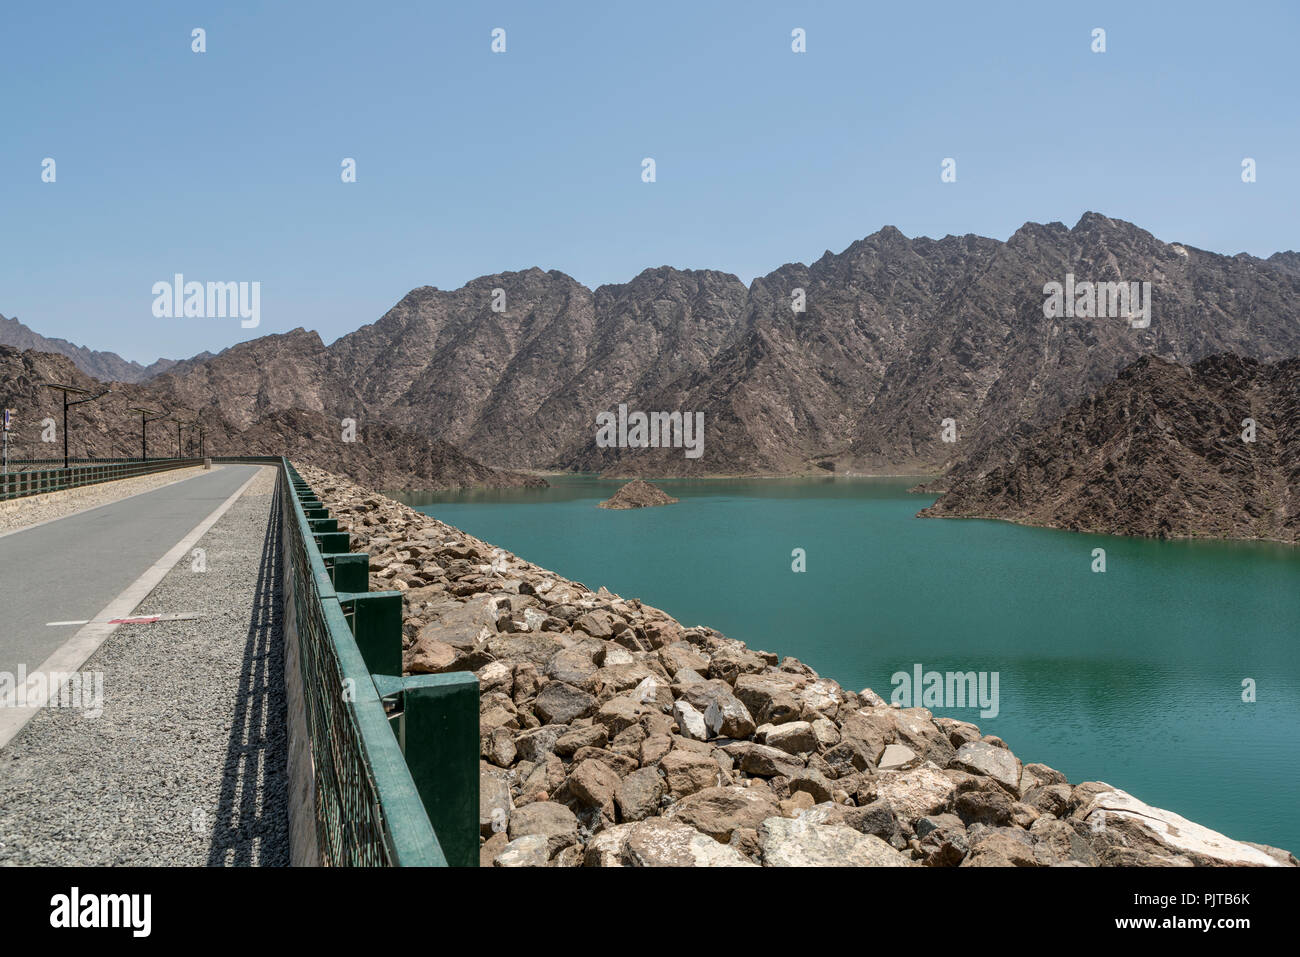 Hatta Hatta en barrage et le réservoir, une enclave de l'émirat de Dubaï dans le montagnes Hajar, Emirats Arabes Unis. Banque D'Images